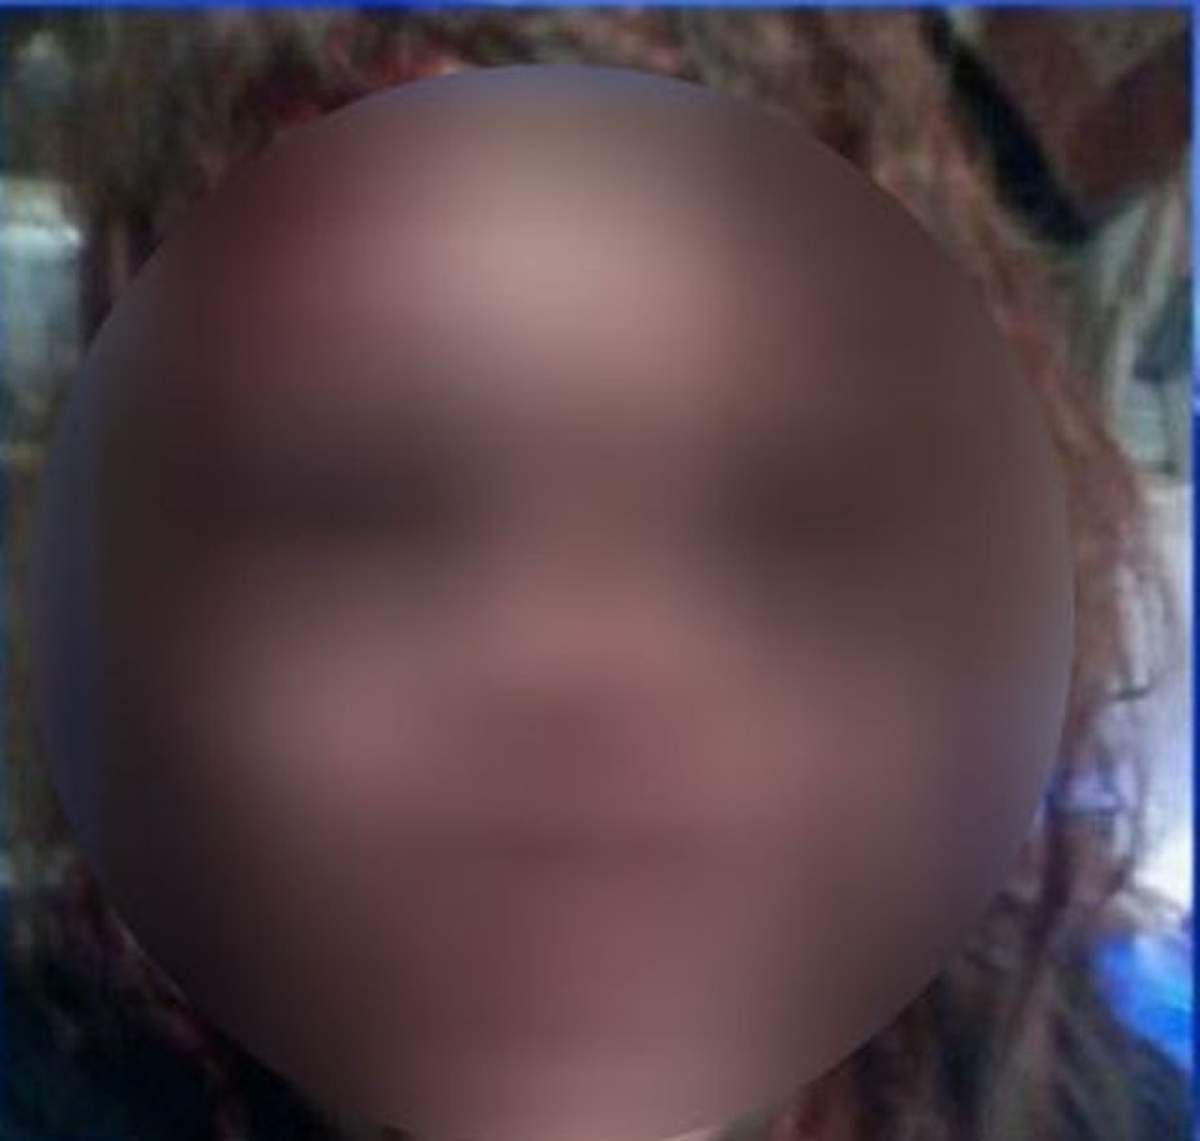 Facebook-ul a salvat-o! O femeie şi-a pus fotografia cu chipul desfigurat de soţ pe reţeaua de socializare unde a cerut ajutor